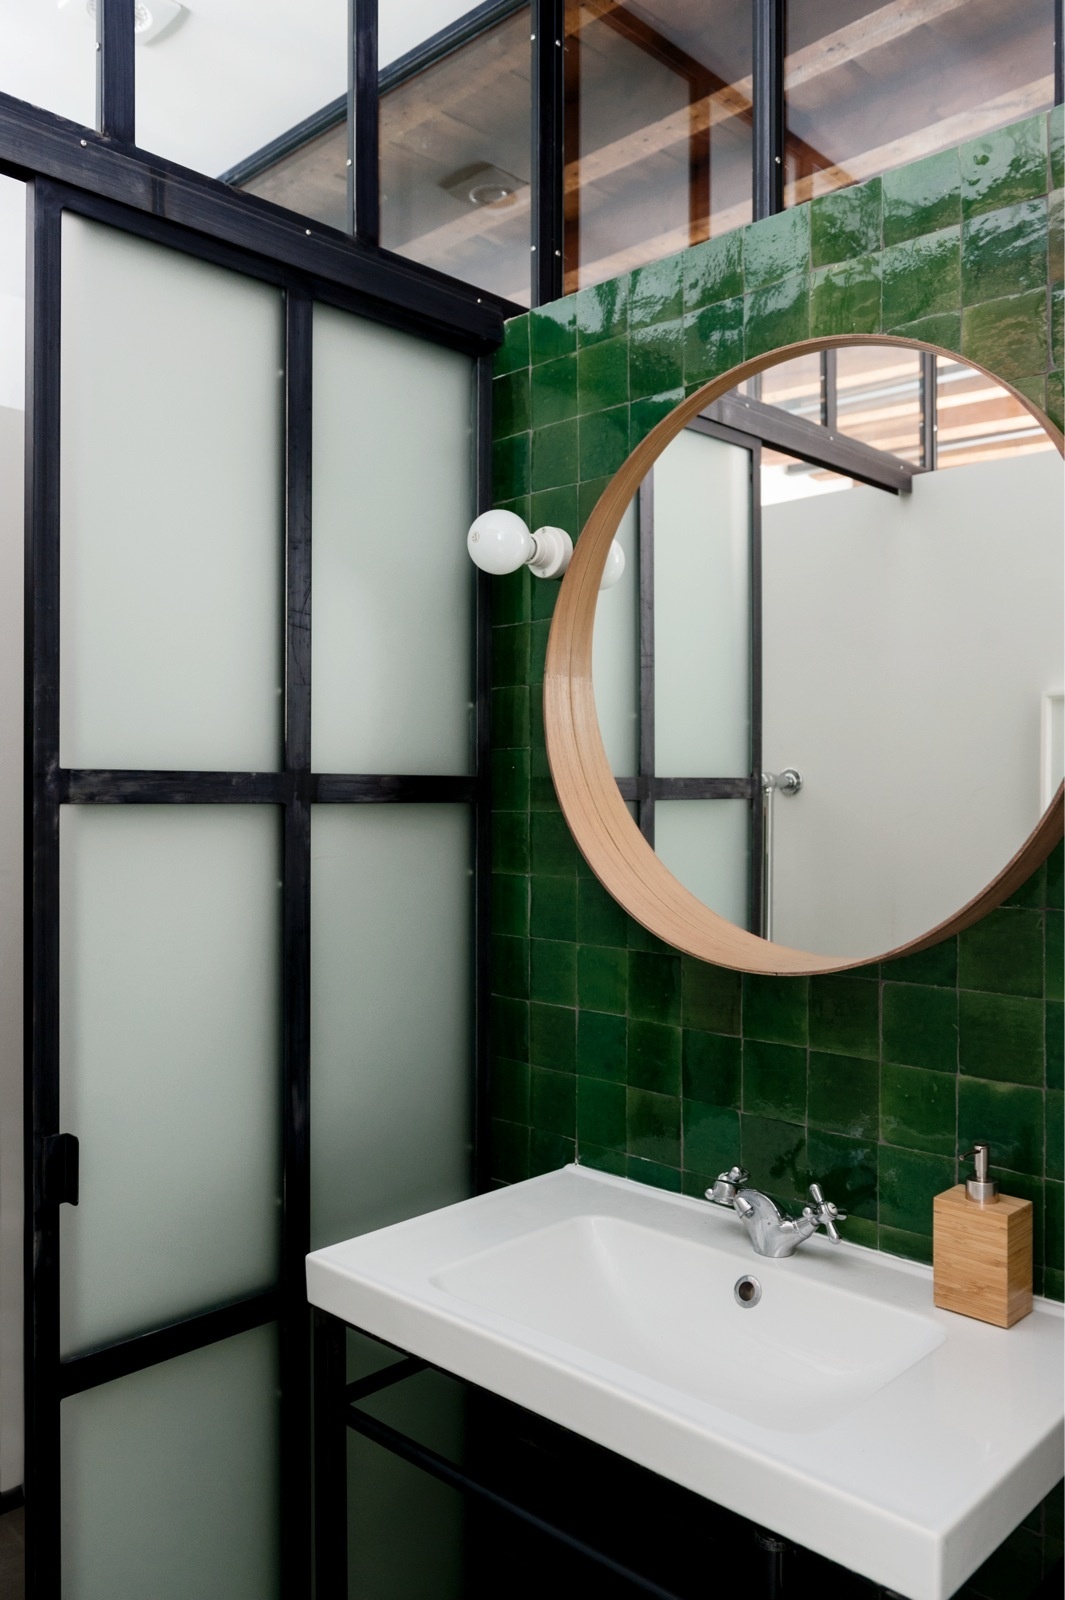 Tại khu vực bồn rửa, NTK đã lắp đặt tấm gương tròn giúp đánh lừa thị giác, cho phòng tắm siêu nhỏ trở nên rộng hơn so với diện tích thật. Cùng với đó là những viên gạch vuông màu xanh ngọc lục bảo bề mặt bóng loáng thu hút không kém.